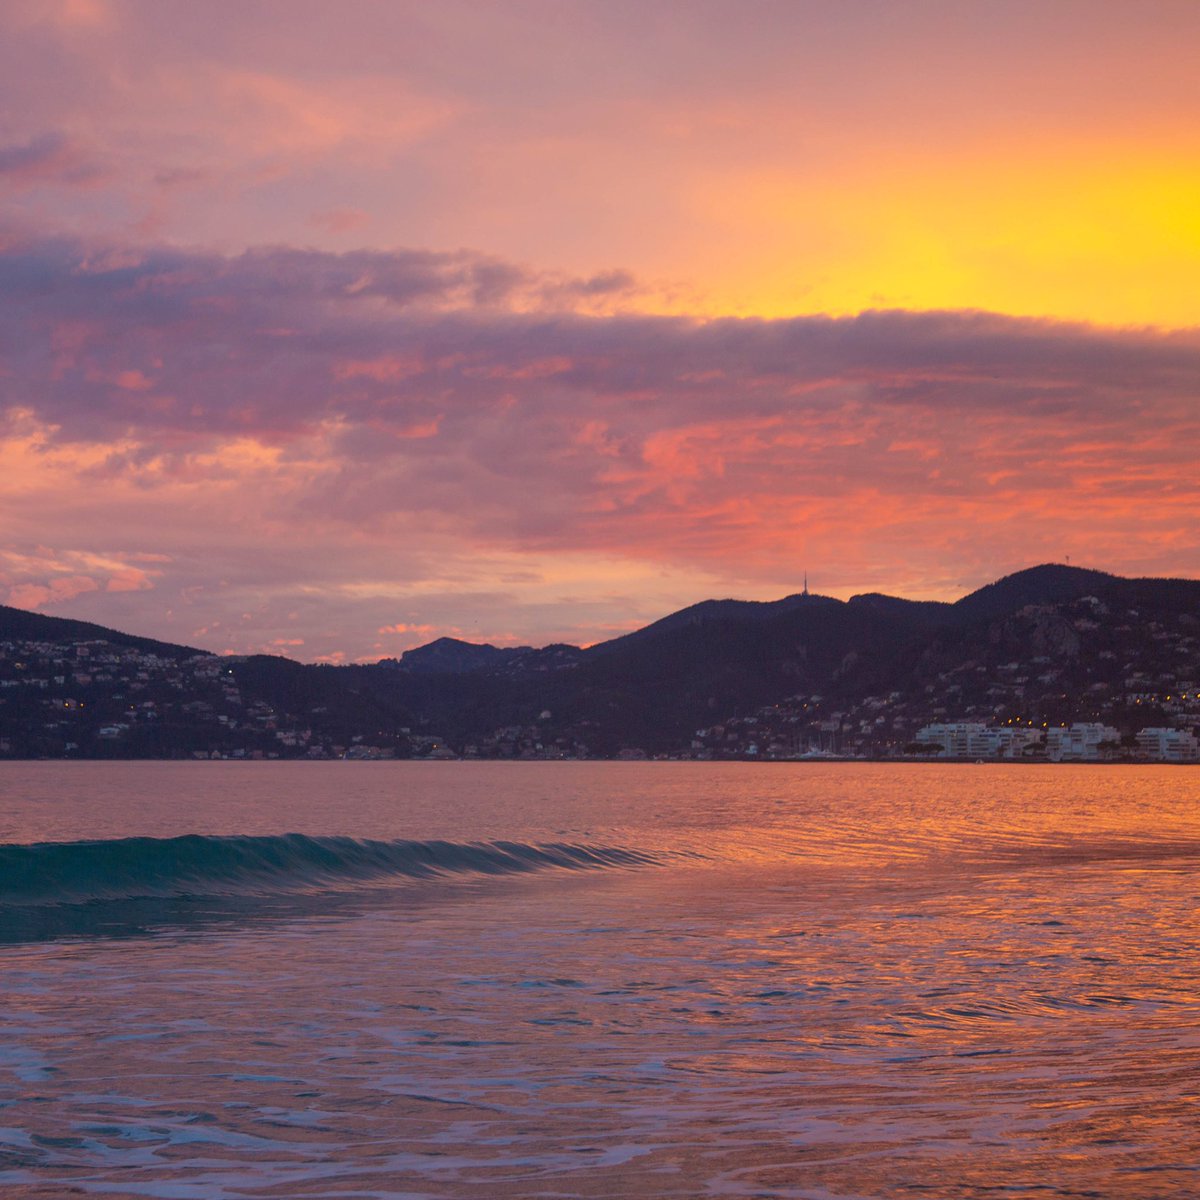 We are all #sunsetlovers 😍 incredible sunset from #Cannes 
—
Magnifique coucher de soleil depuis la baie de Cannes ✨💫 
—
#villedecannes #jaimecannes #hotelsunriviera #hotelcannes @davidlisnard @villecannes @CannesIsYours